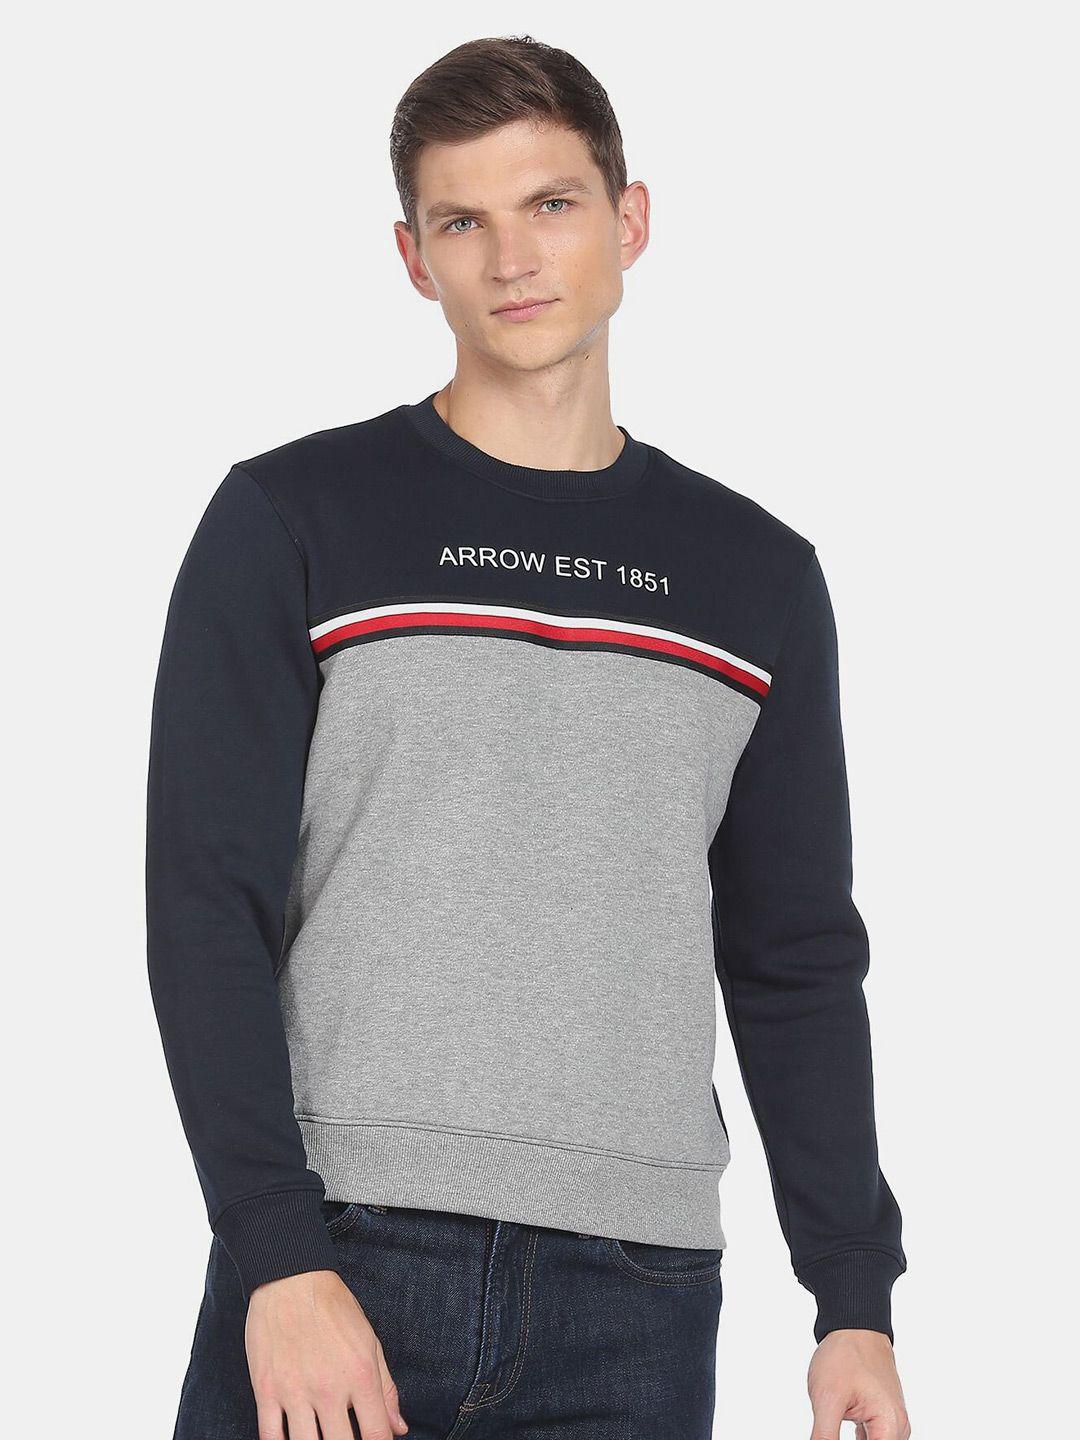 arrow sport men printed sweatshirt